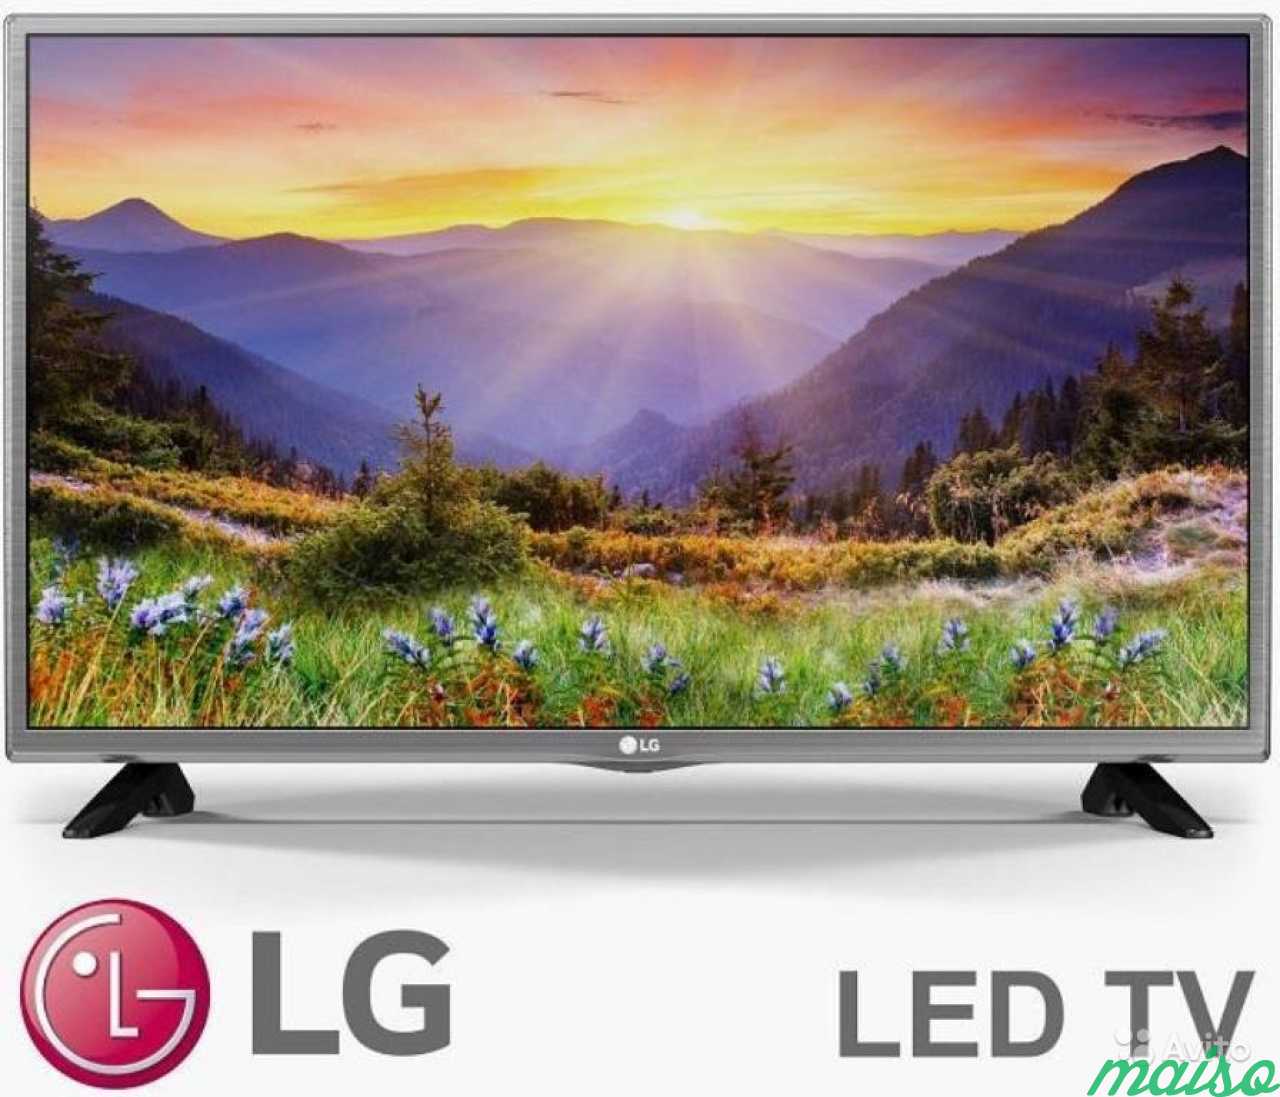 Lg телевизор ру. LG 32lh519u. 32" Телевизор LG 32lh513u led. Телевизор LG 32 Full LG led Smart TV. LG 32lf510u.